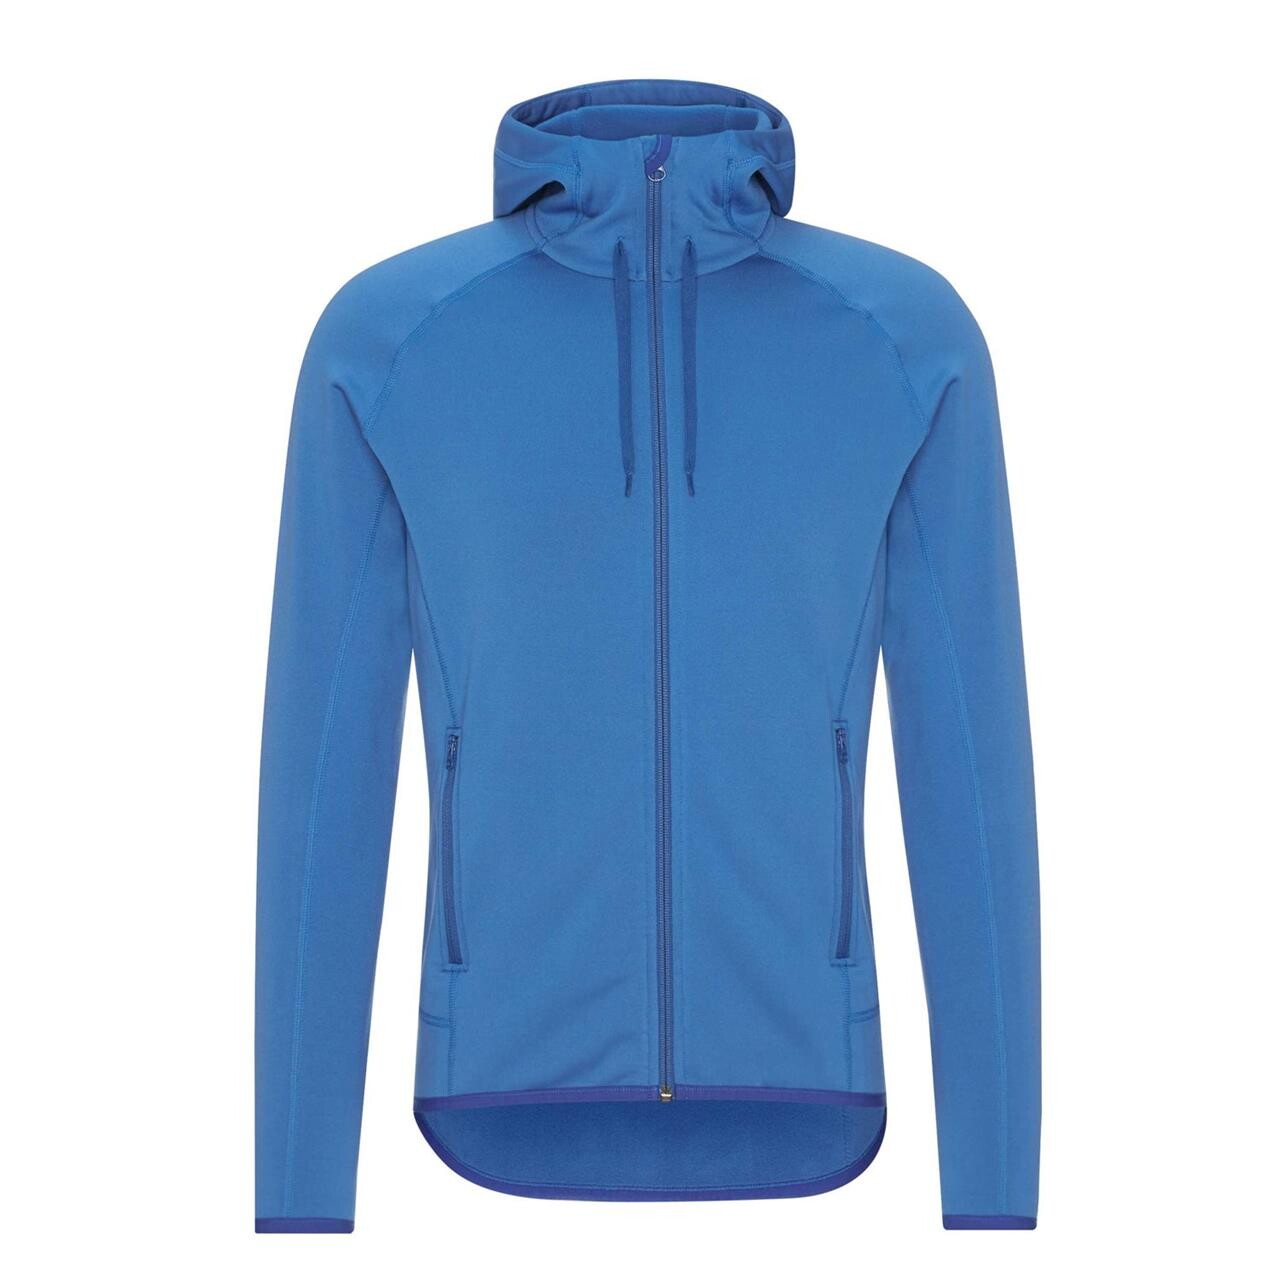 Se Frilufts Mens Sjunkhatten Hooded Fleece Jacket (Blå (DARK BLUE) X-large) hos Friluftsland.dk